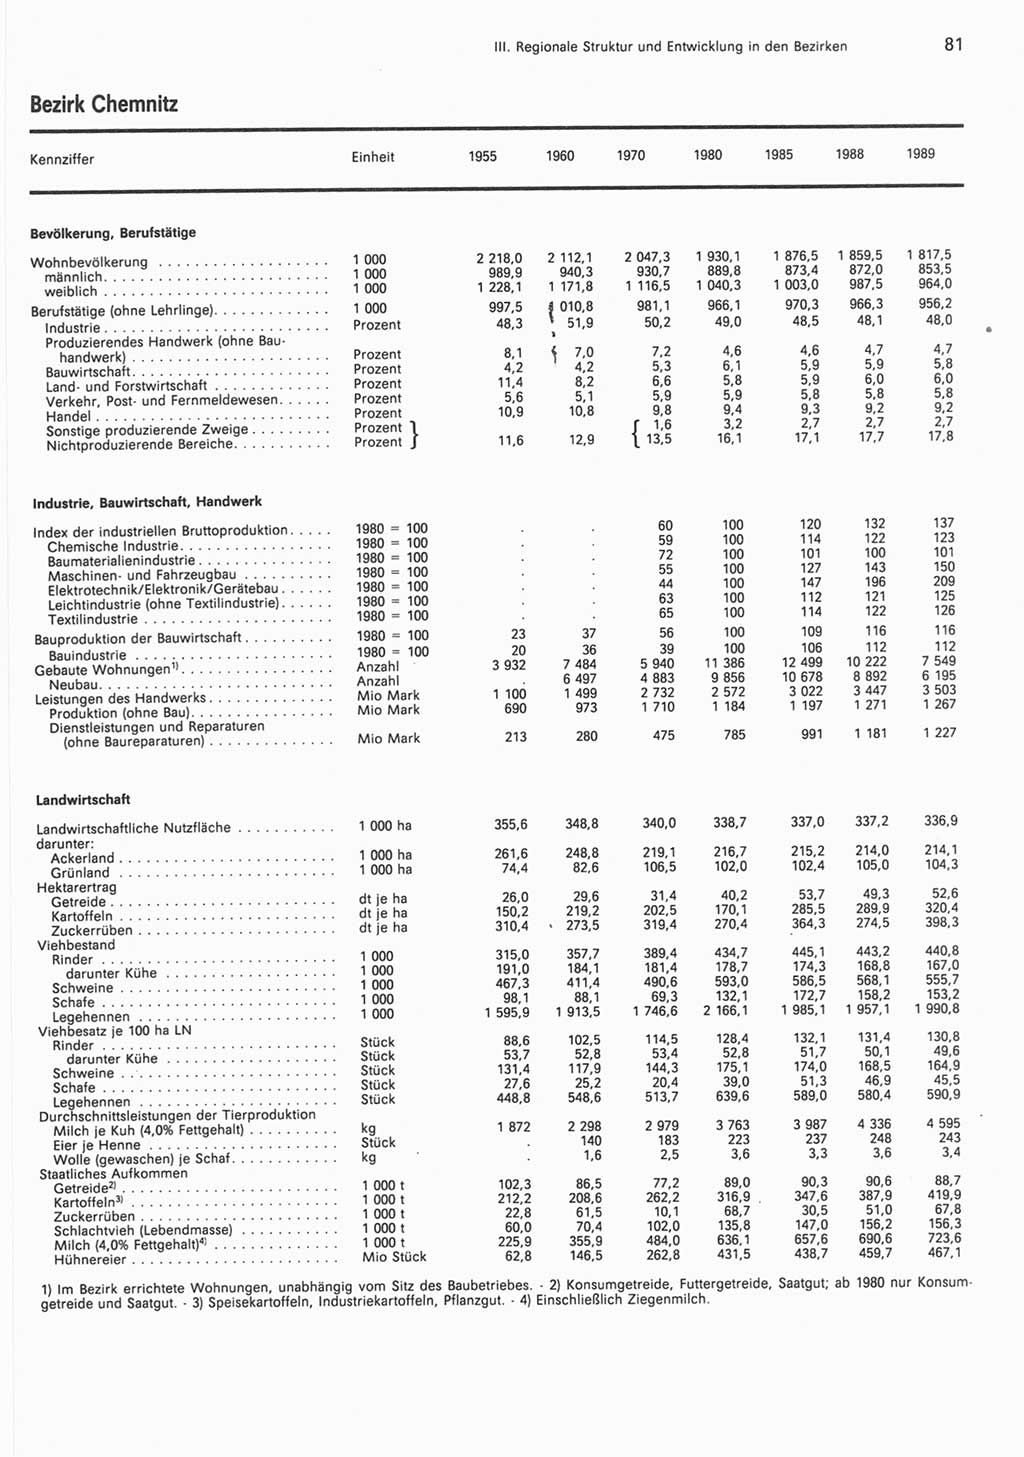 Statistisches Jahrbuch der Deutschen Demokratischen Republik (DDR) 1990, Seite 81 (Stat. Jb. DDR 1990, S. 81)